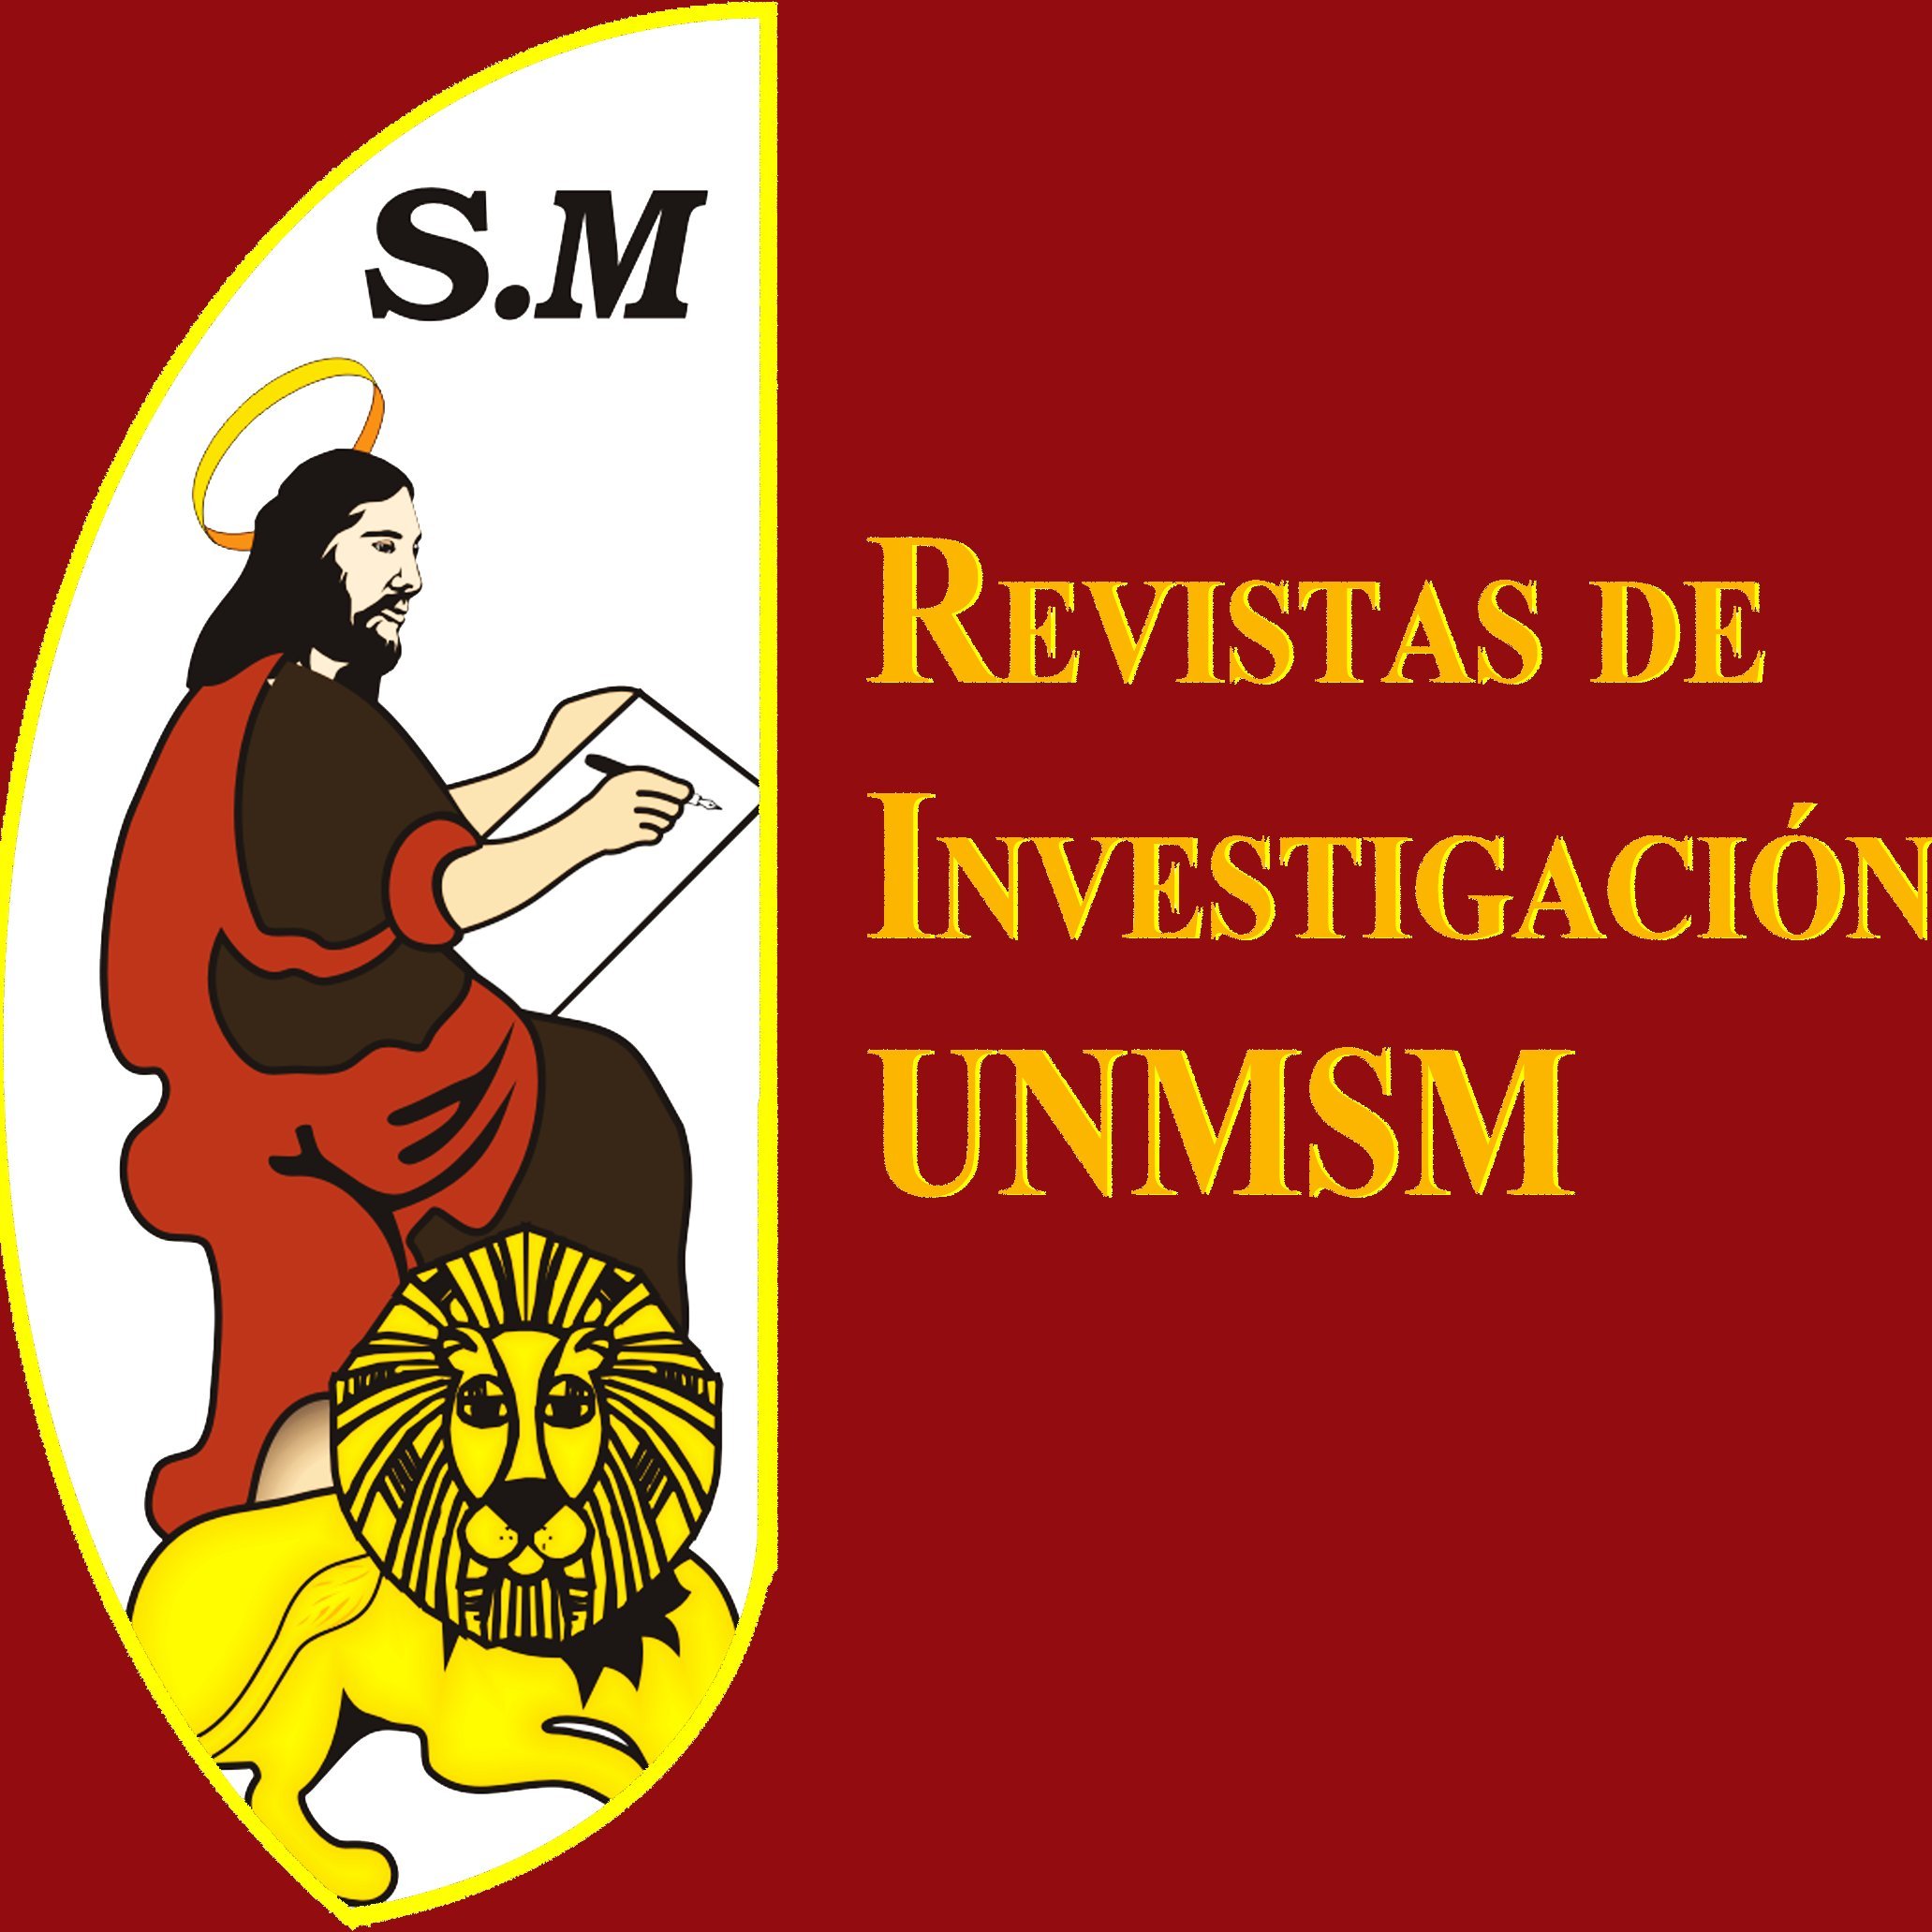 Twiter oficial del portal Revistas de Investigación UNMSM de la Universidad Nacional Mayor de San Marcos @UNMSM_. Tenemos 15 revistas visibles